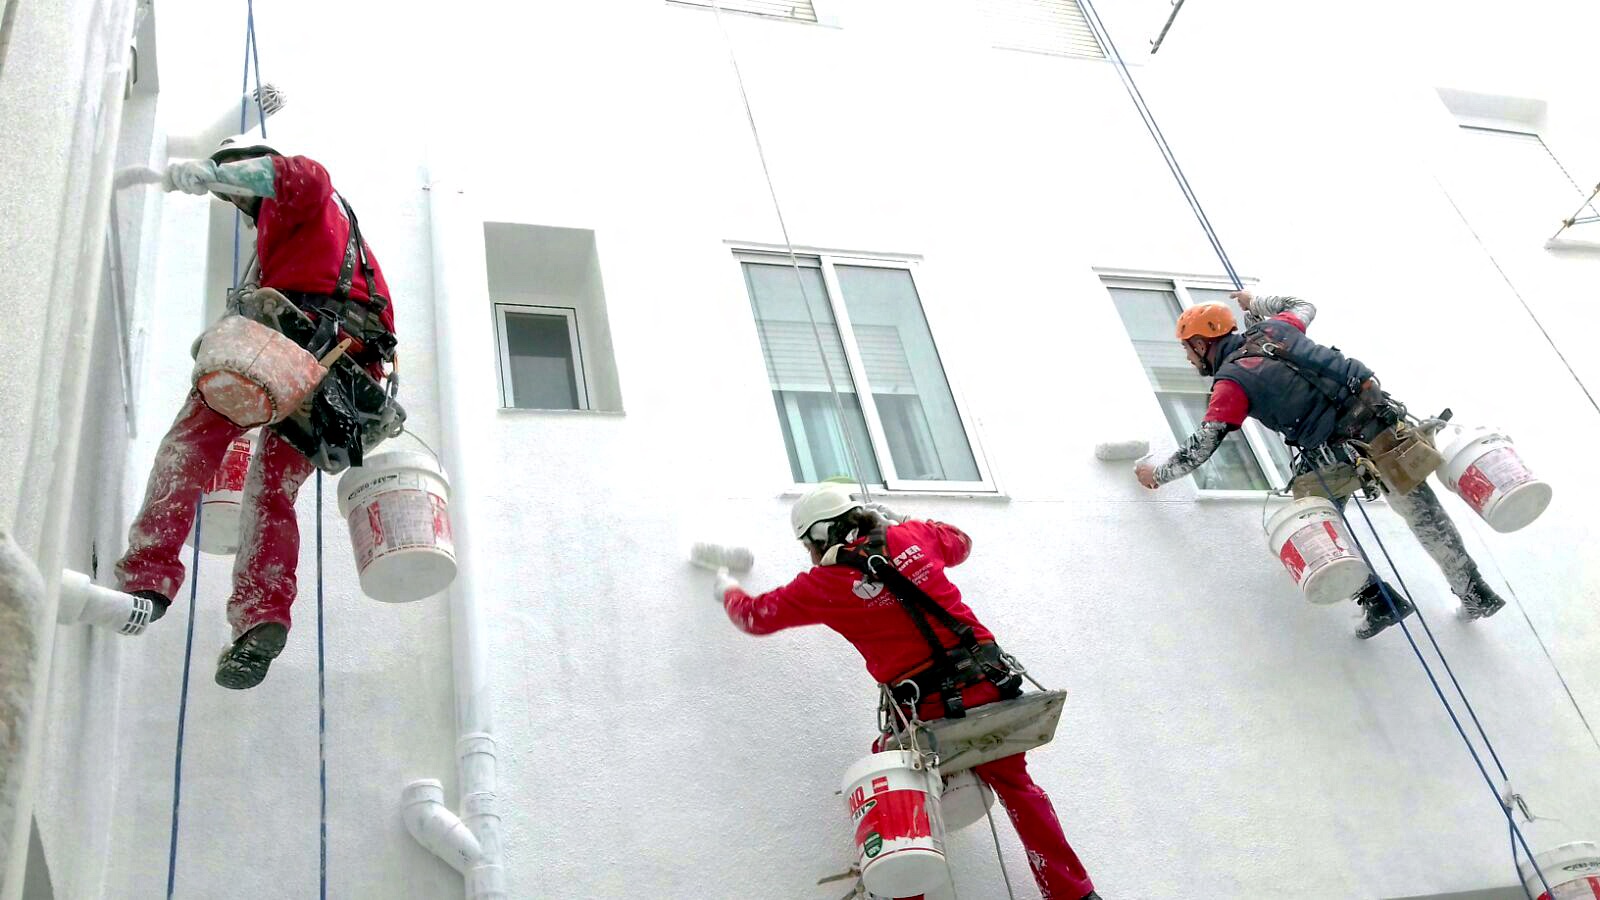 Operarios vestidos con equipo de seguridad completo y arneses, realizando trabajos de pintura en la fachada blanca de un edificio residencial, empleando técnicas de escalada y acceso por cuerda para la rehabilitación urbana.